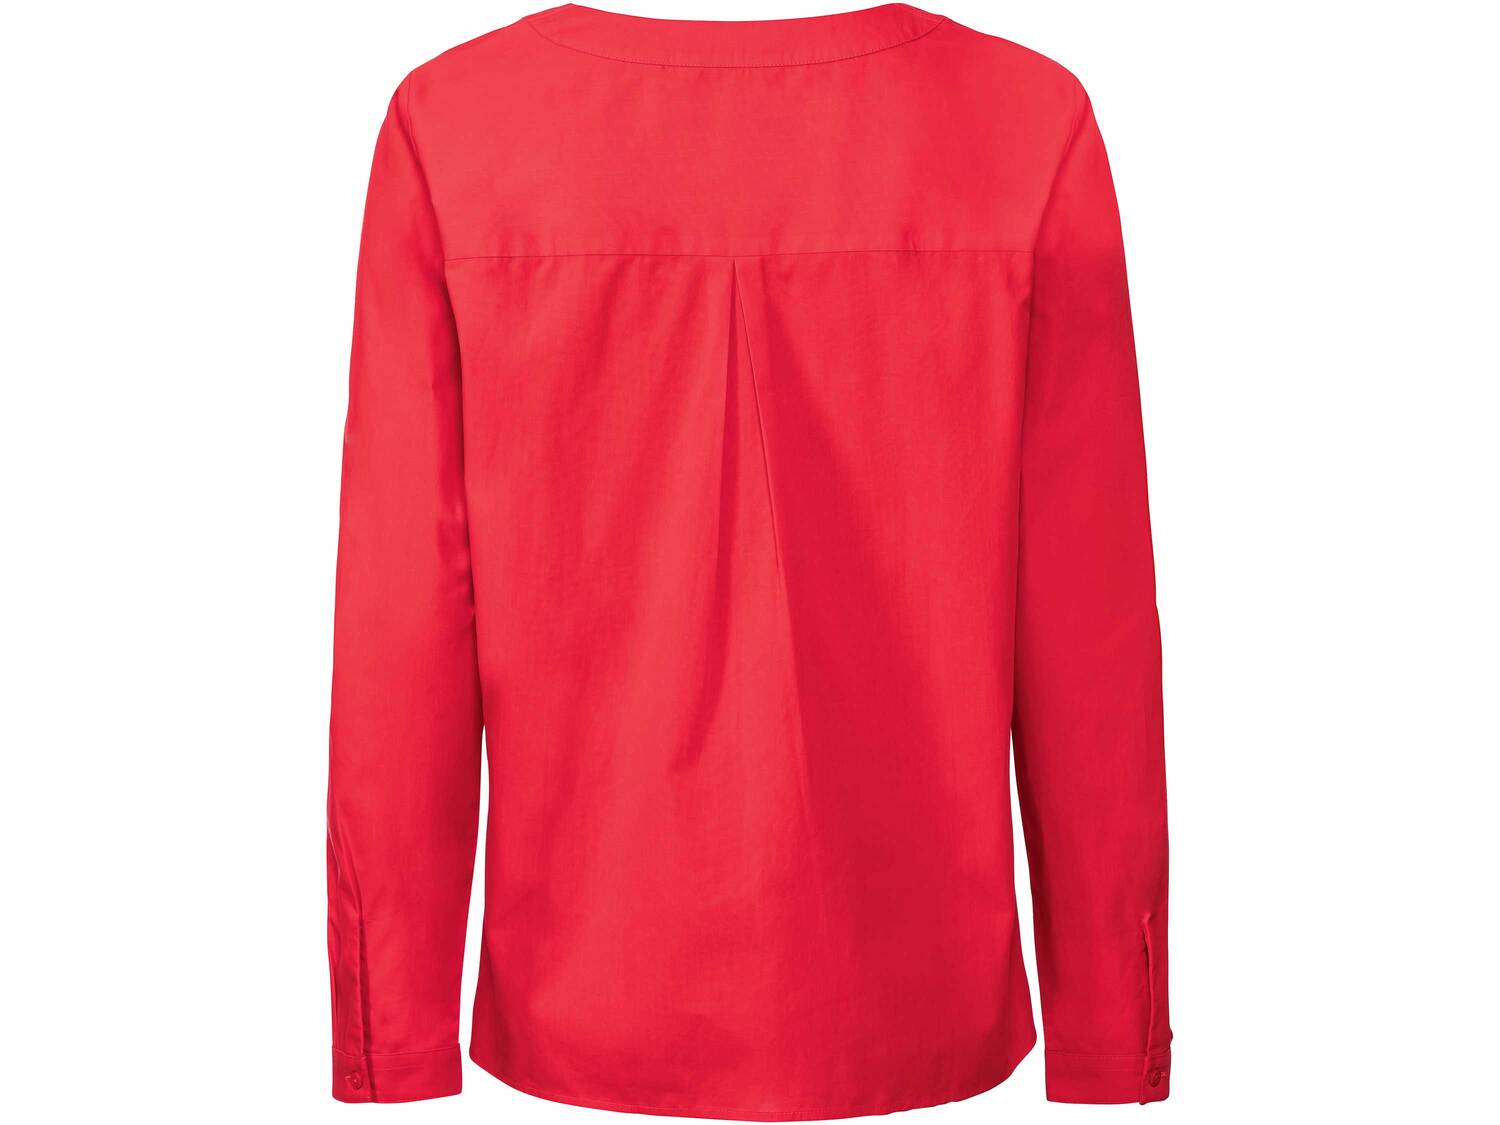 Bluzka damska z bawełny Esmara, cena 44,00 PLN 
- rozmiary: 38-42
- 100% bawełny
- ...